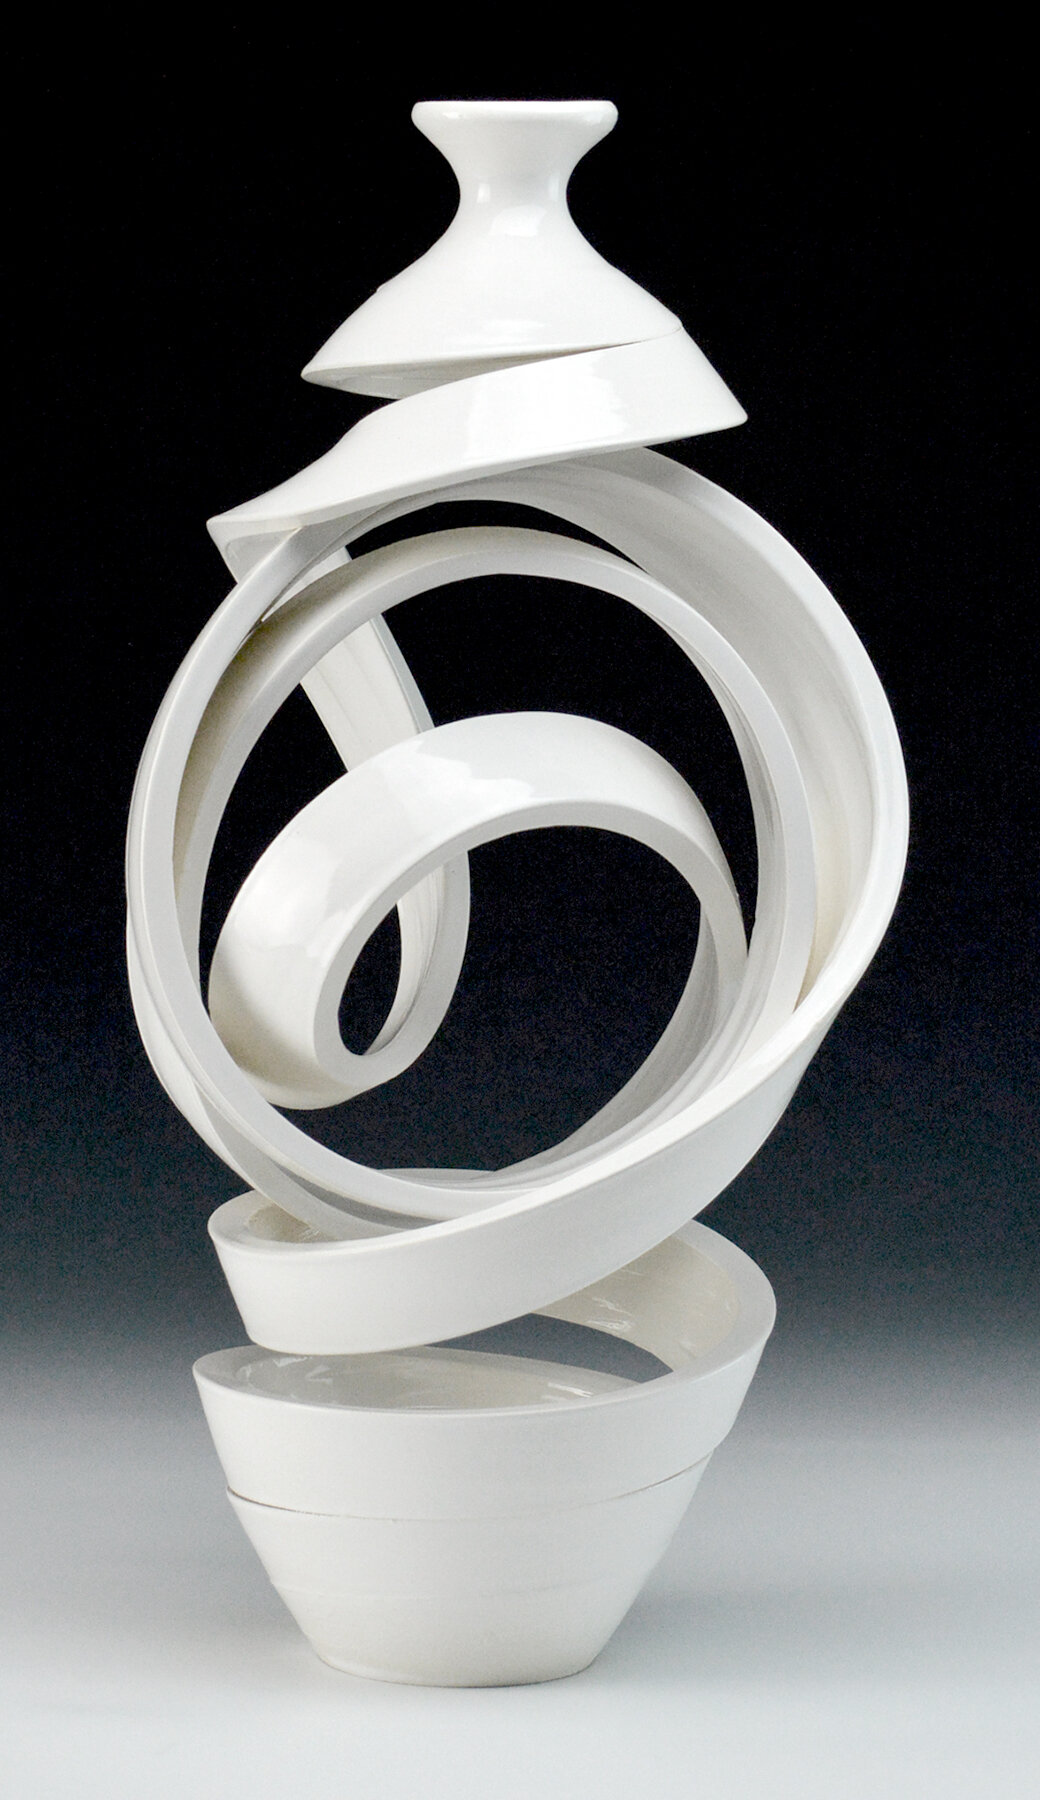 Spatial Spiral; Knot, 15.5 x 7.75 x 7.5 inches / 39.3 x 19.7 x 19 cm, ceramic, glaze, 2019